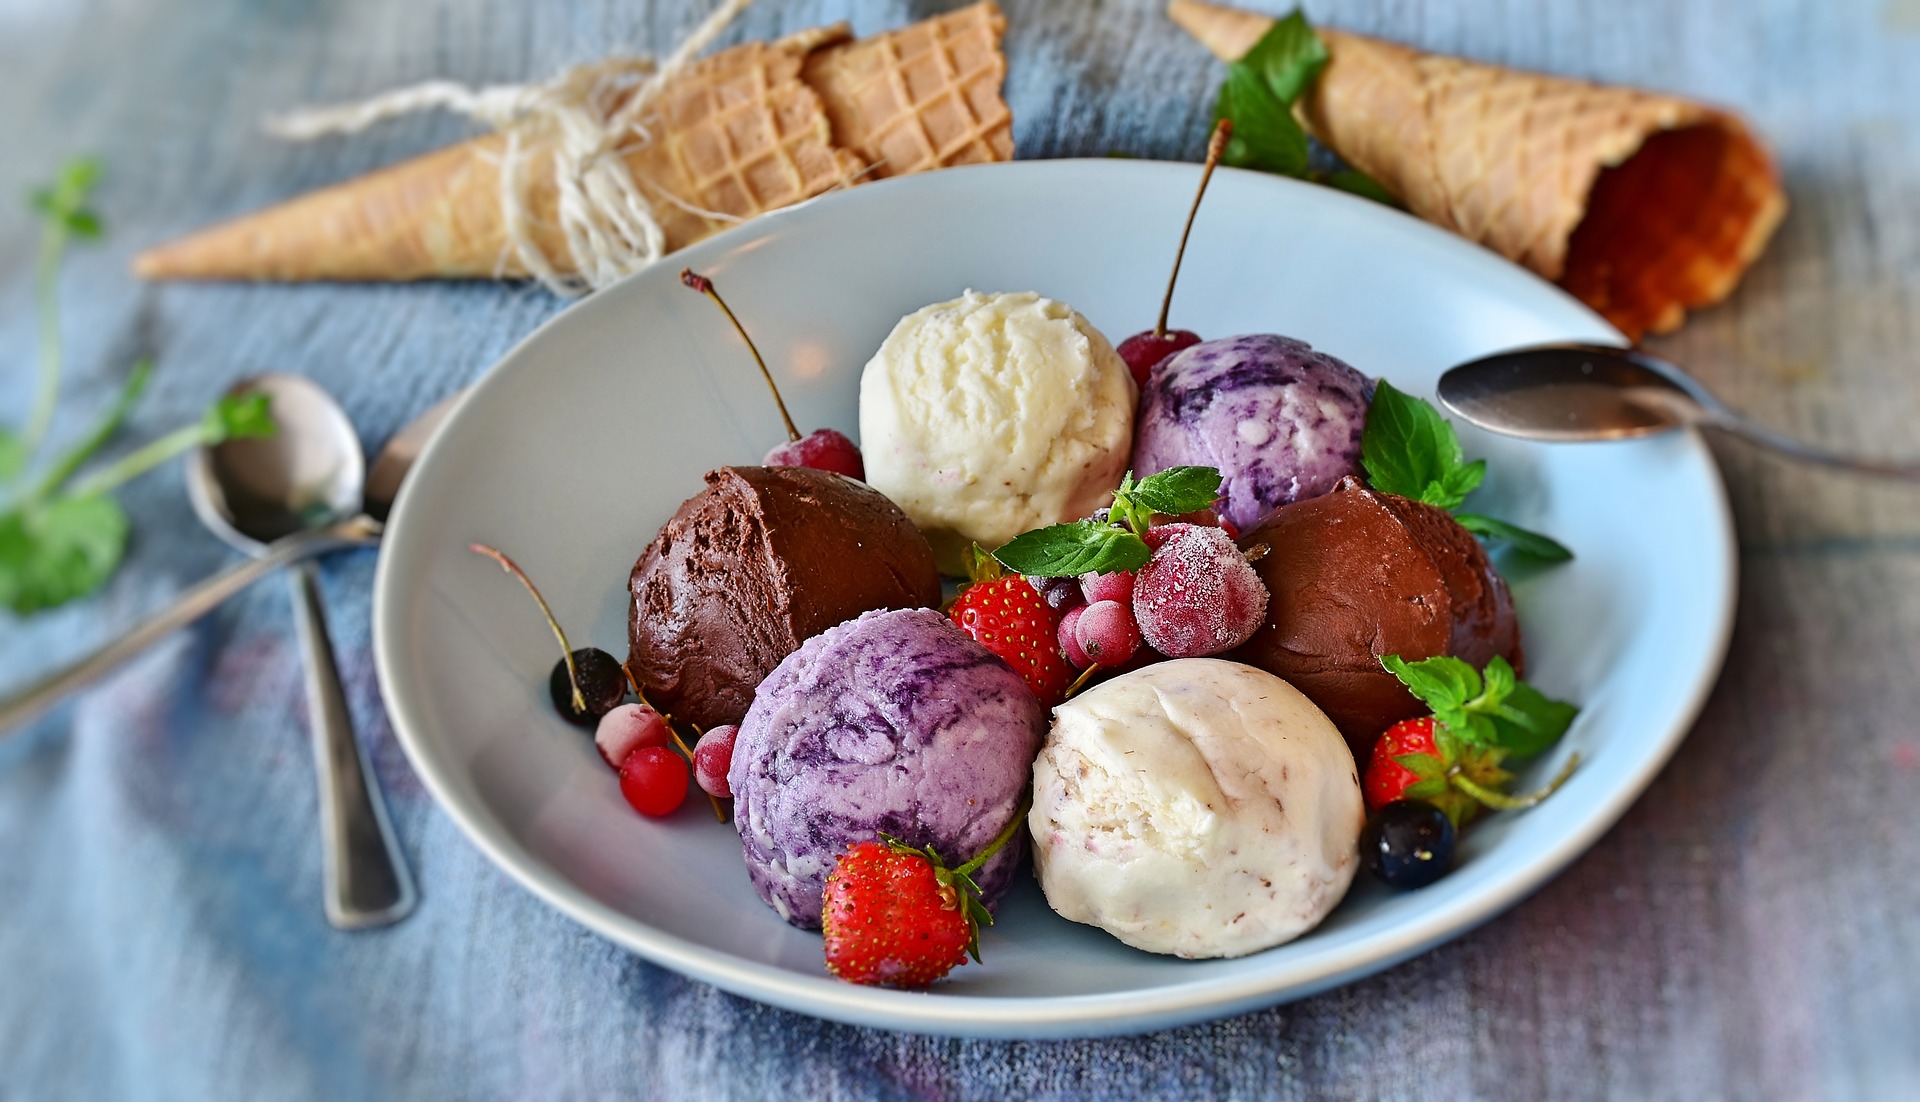 Vemos algumas bolas de sorvete em um prato decorado (imagem ilustrativa).